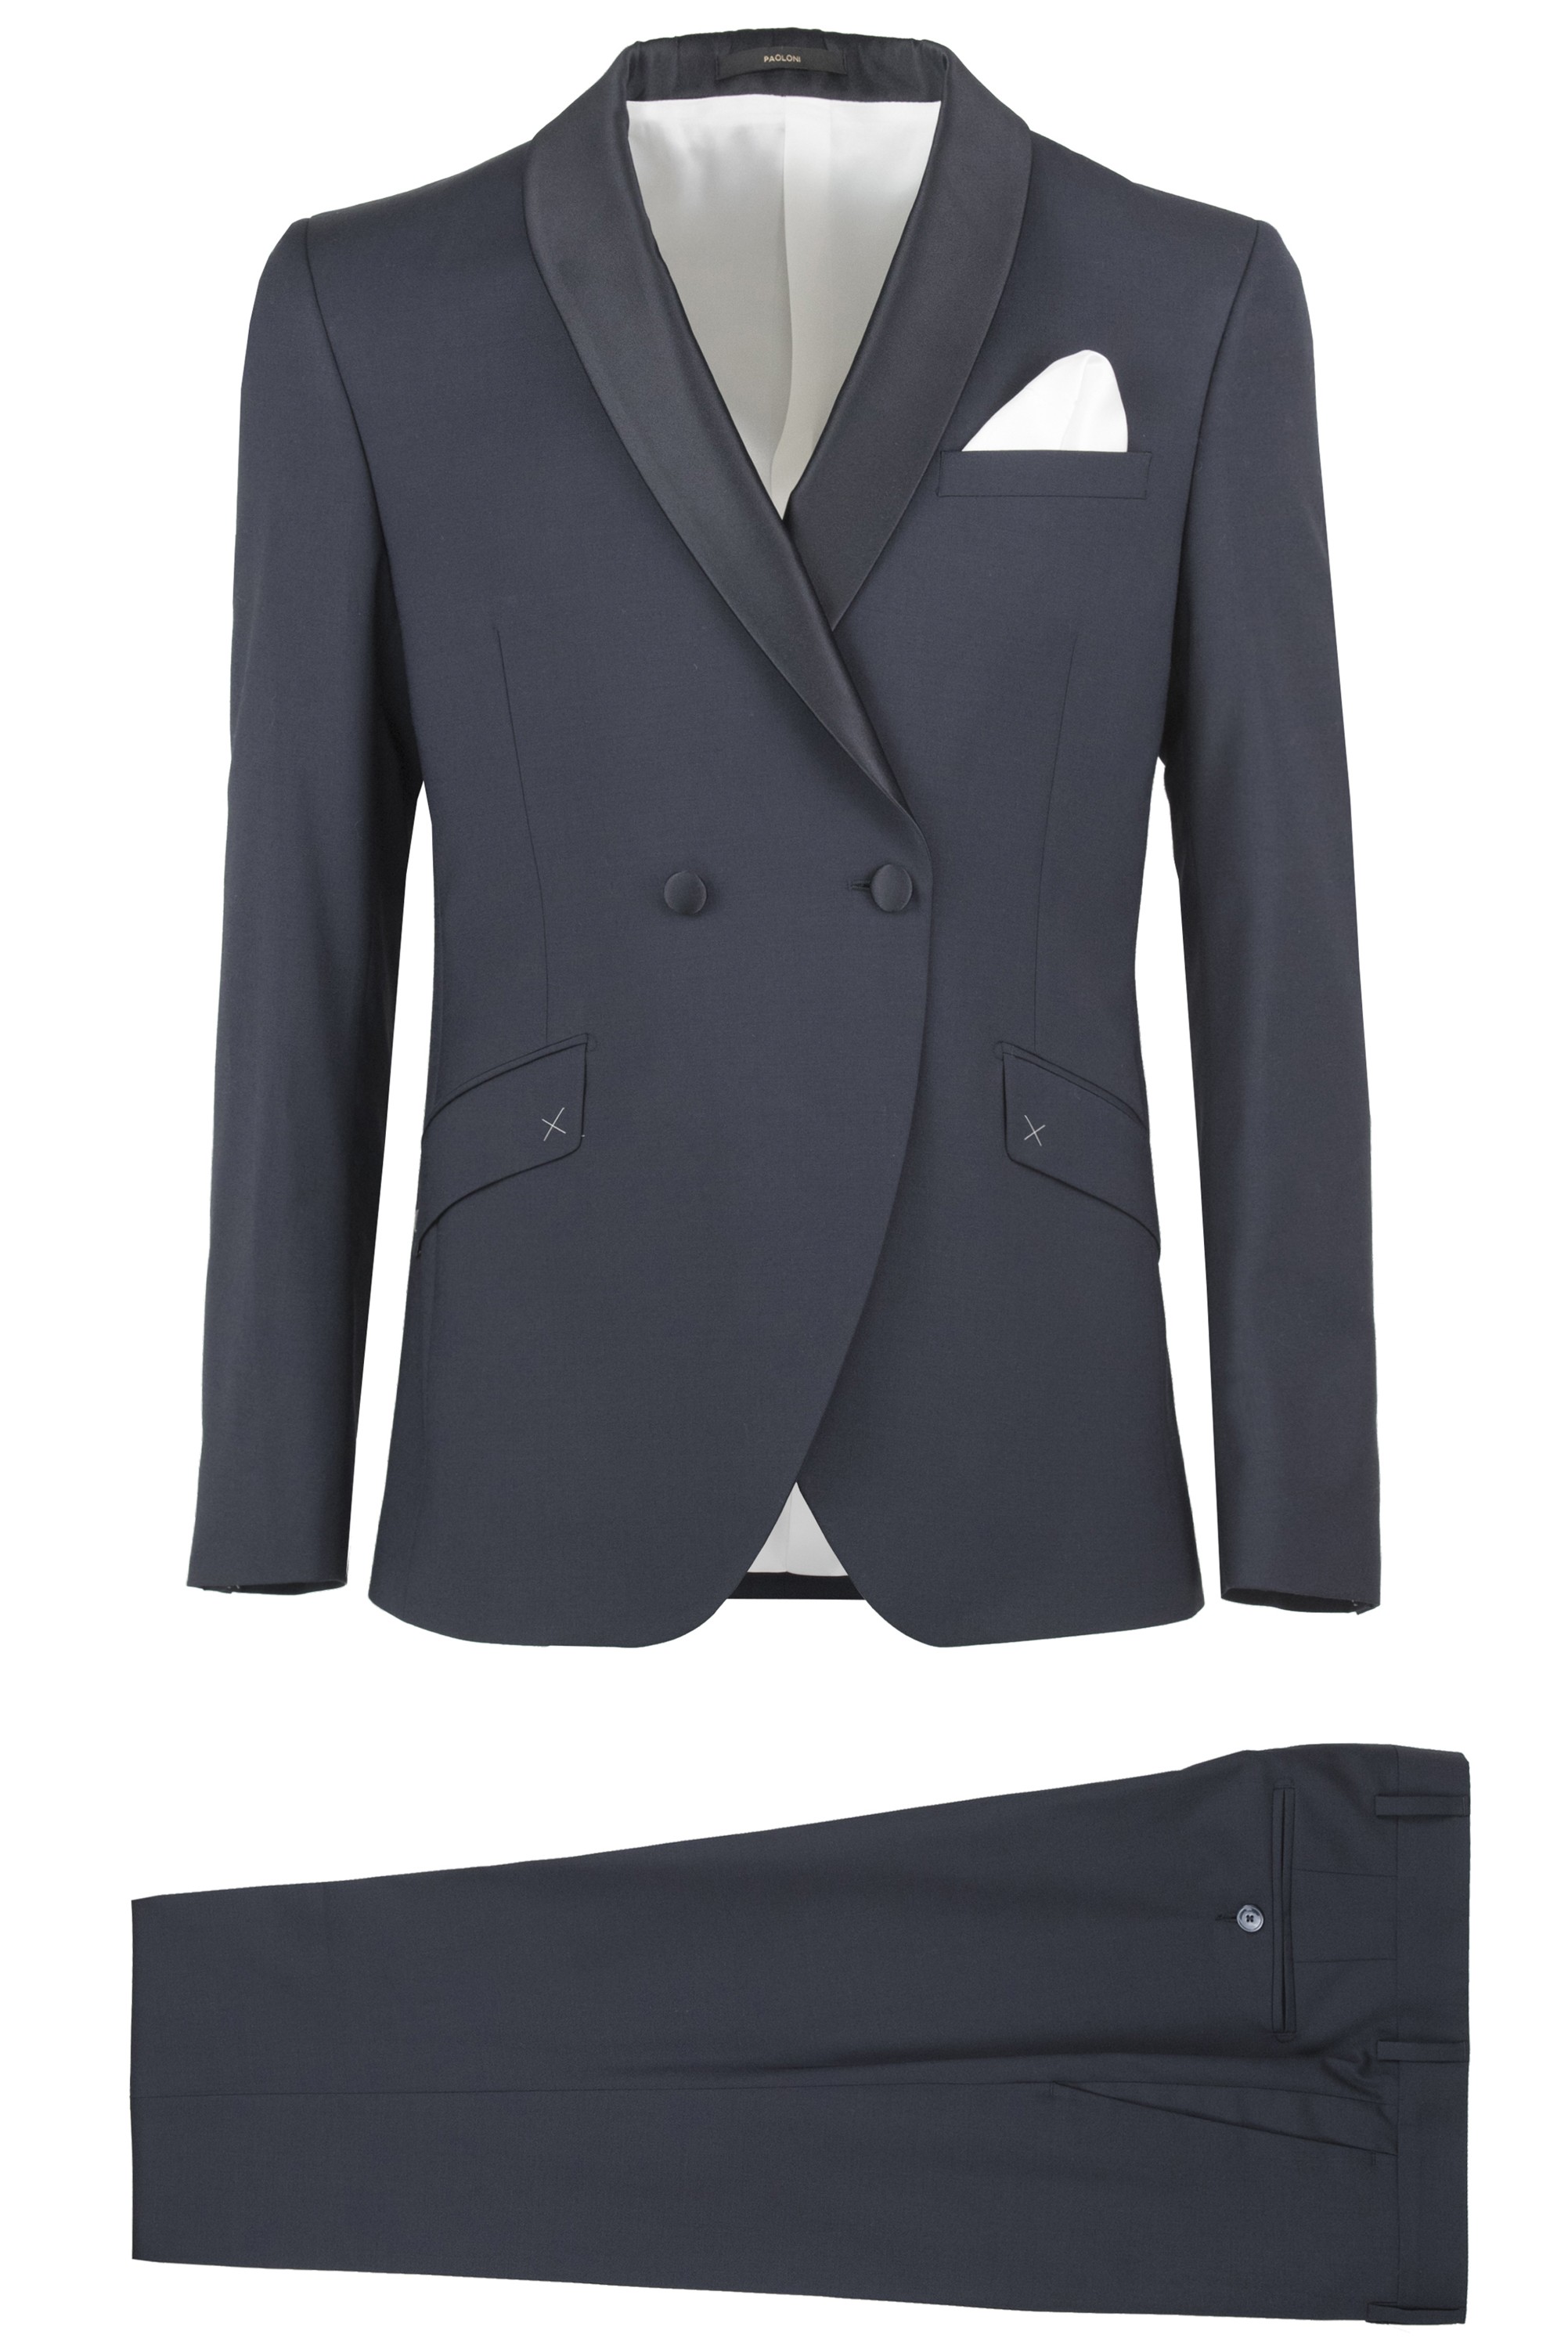 Paoloni Men's Suit 2810A498C 201008 88